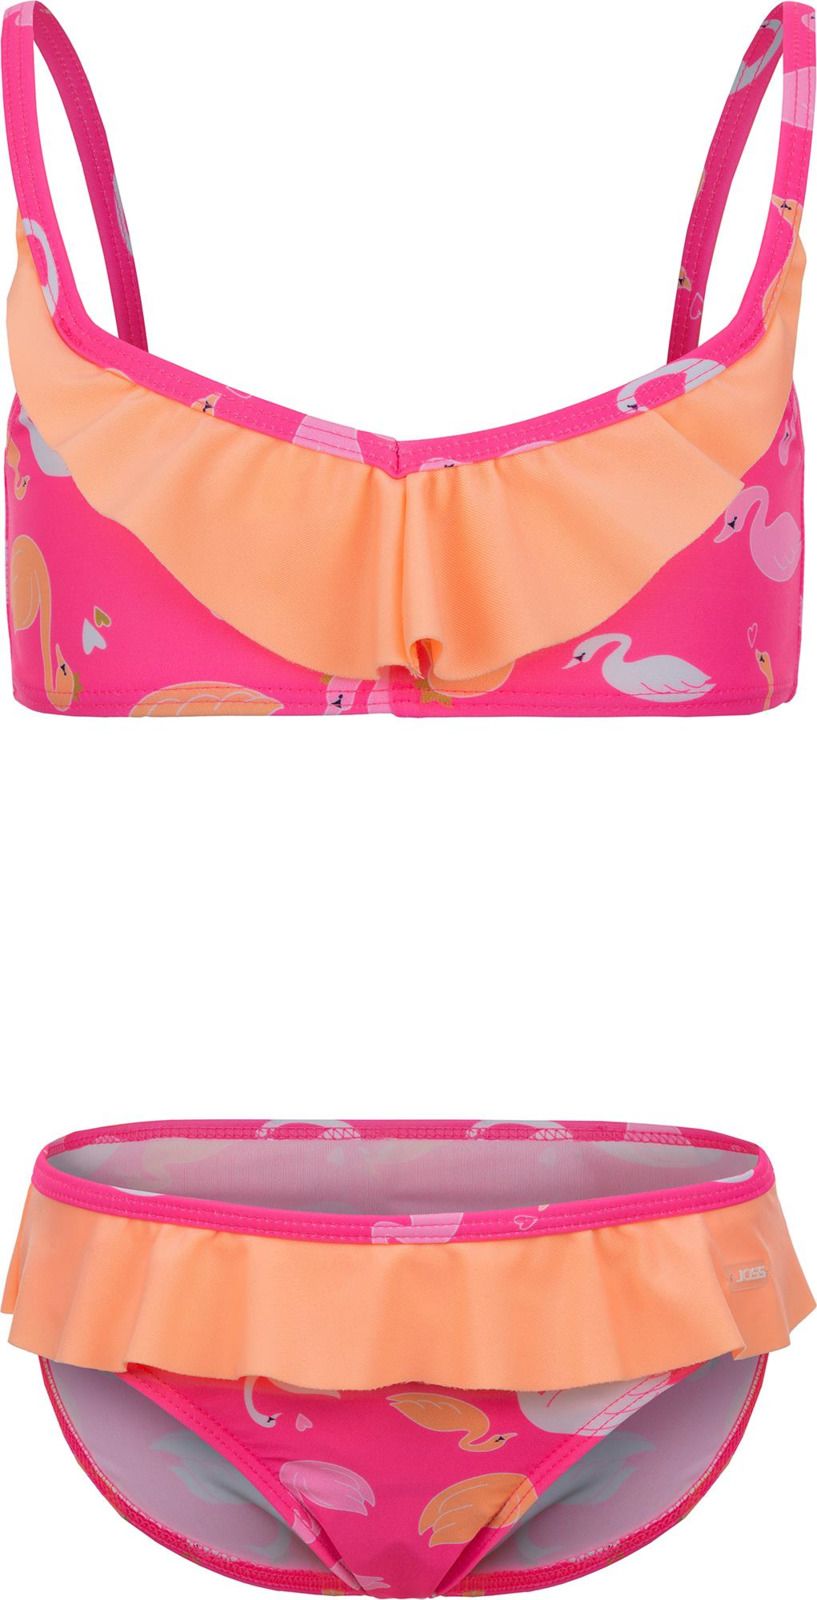     Joss Girls' Swimsuit, : -. GSB07S6-X0.  122